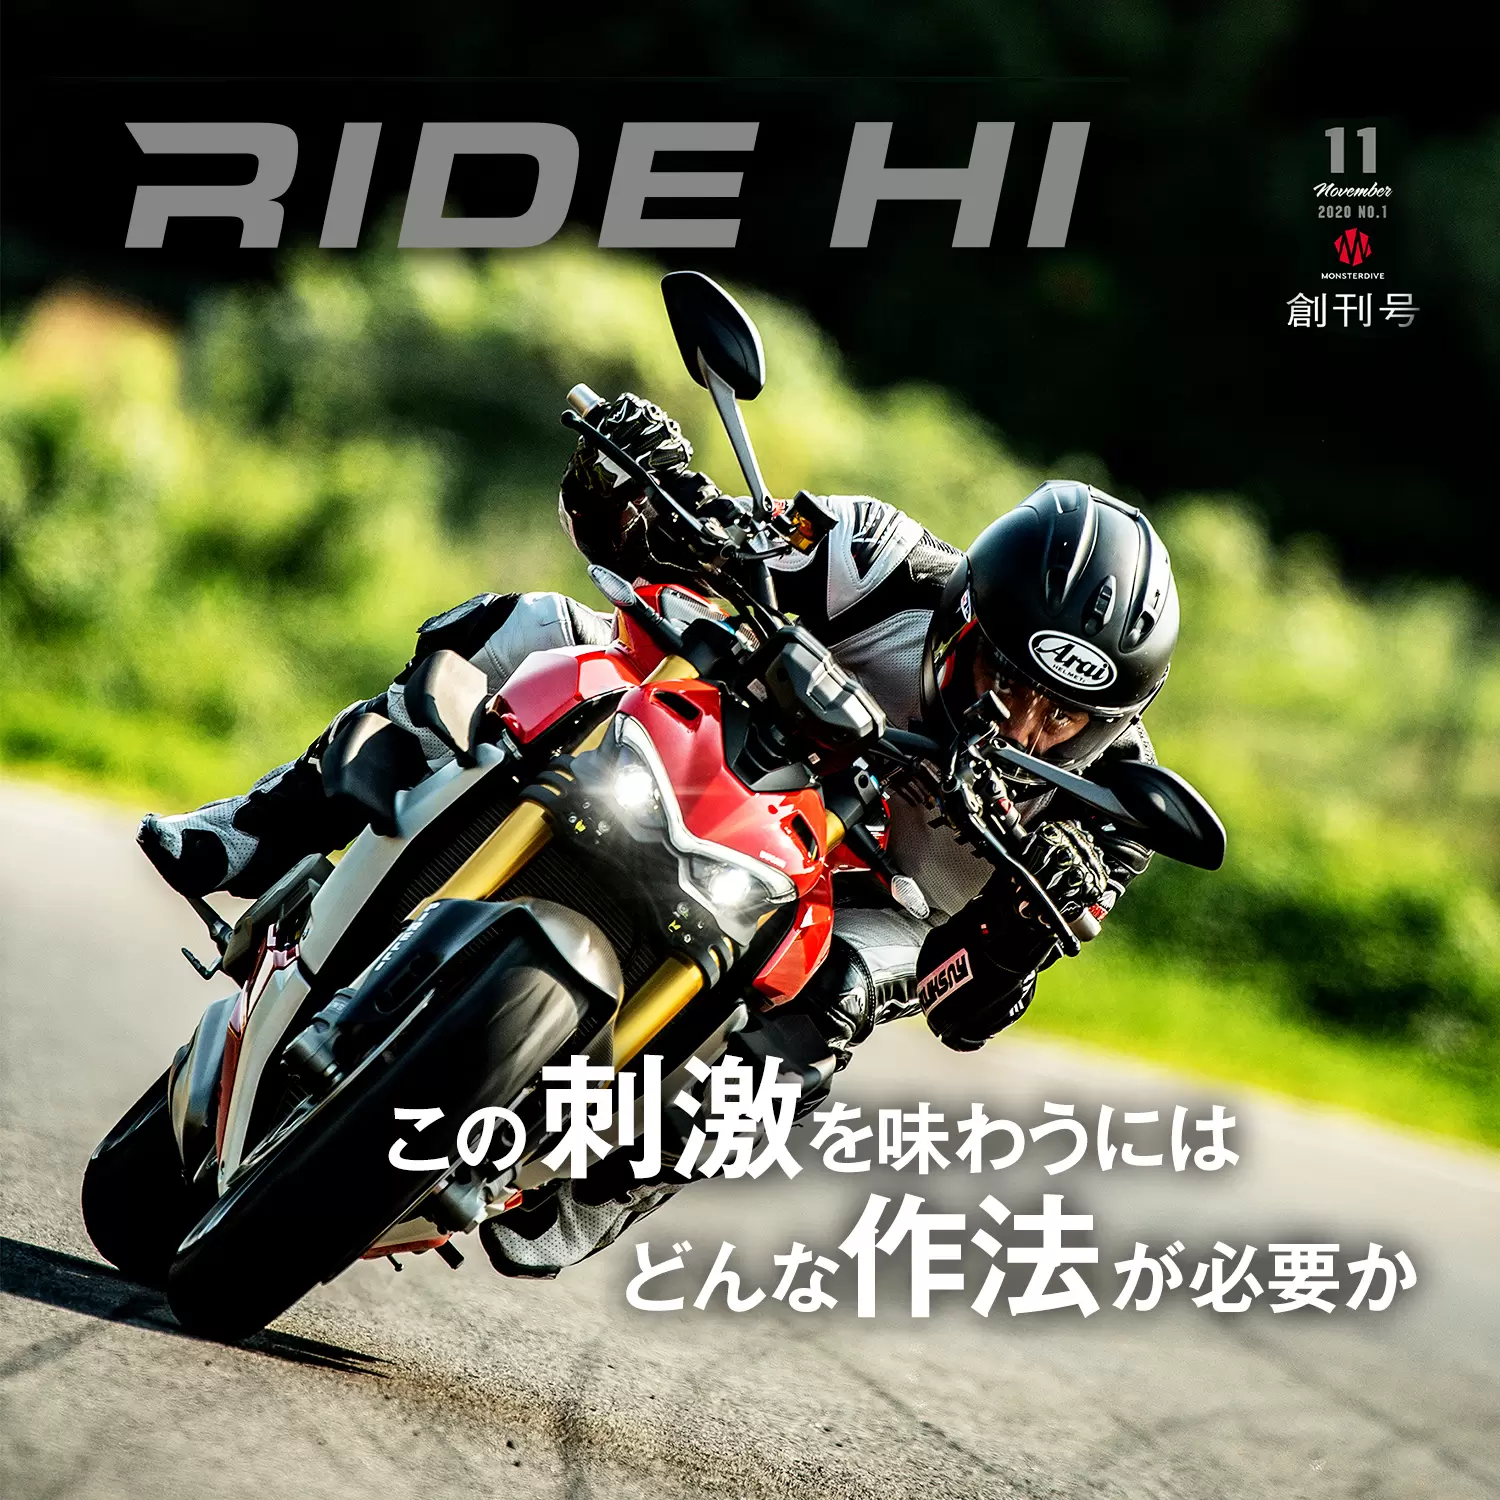 雑誌「RIDE HI」創刊号が発売 | ピックアップ | RIDE HI(ライドハイ